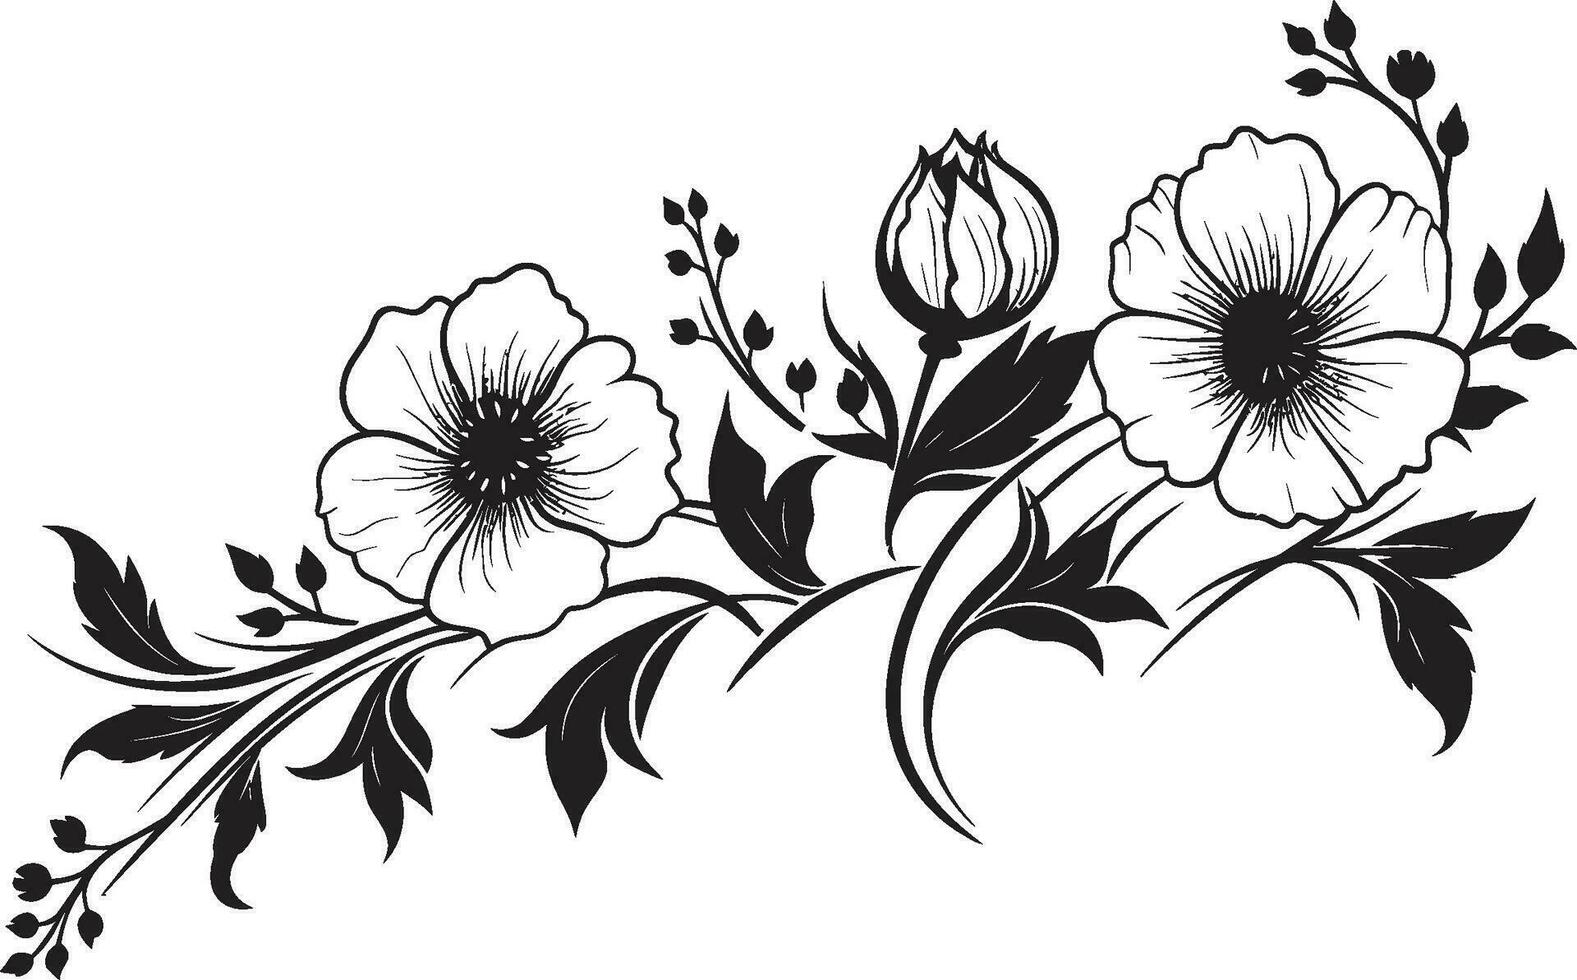 noir florecer melodías intrincado mano dibujado florales tinta noir botánico Odisea Clásico negro emblema bocetos vector